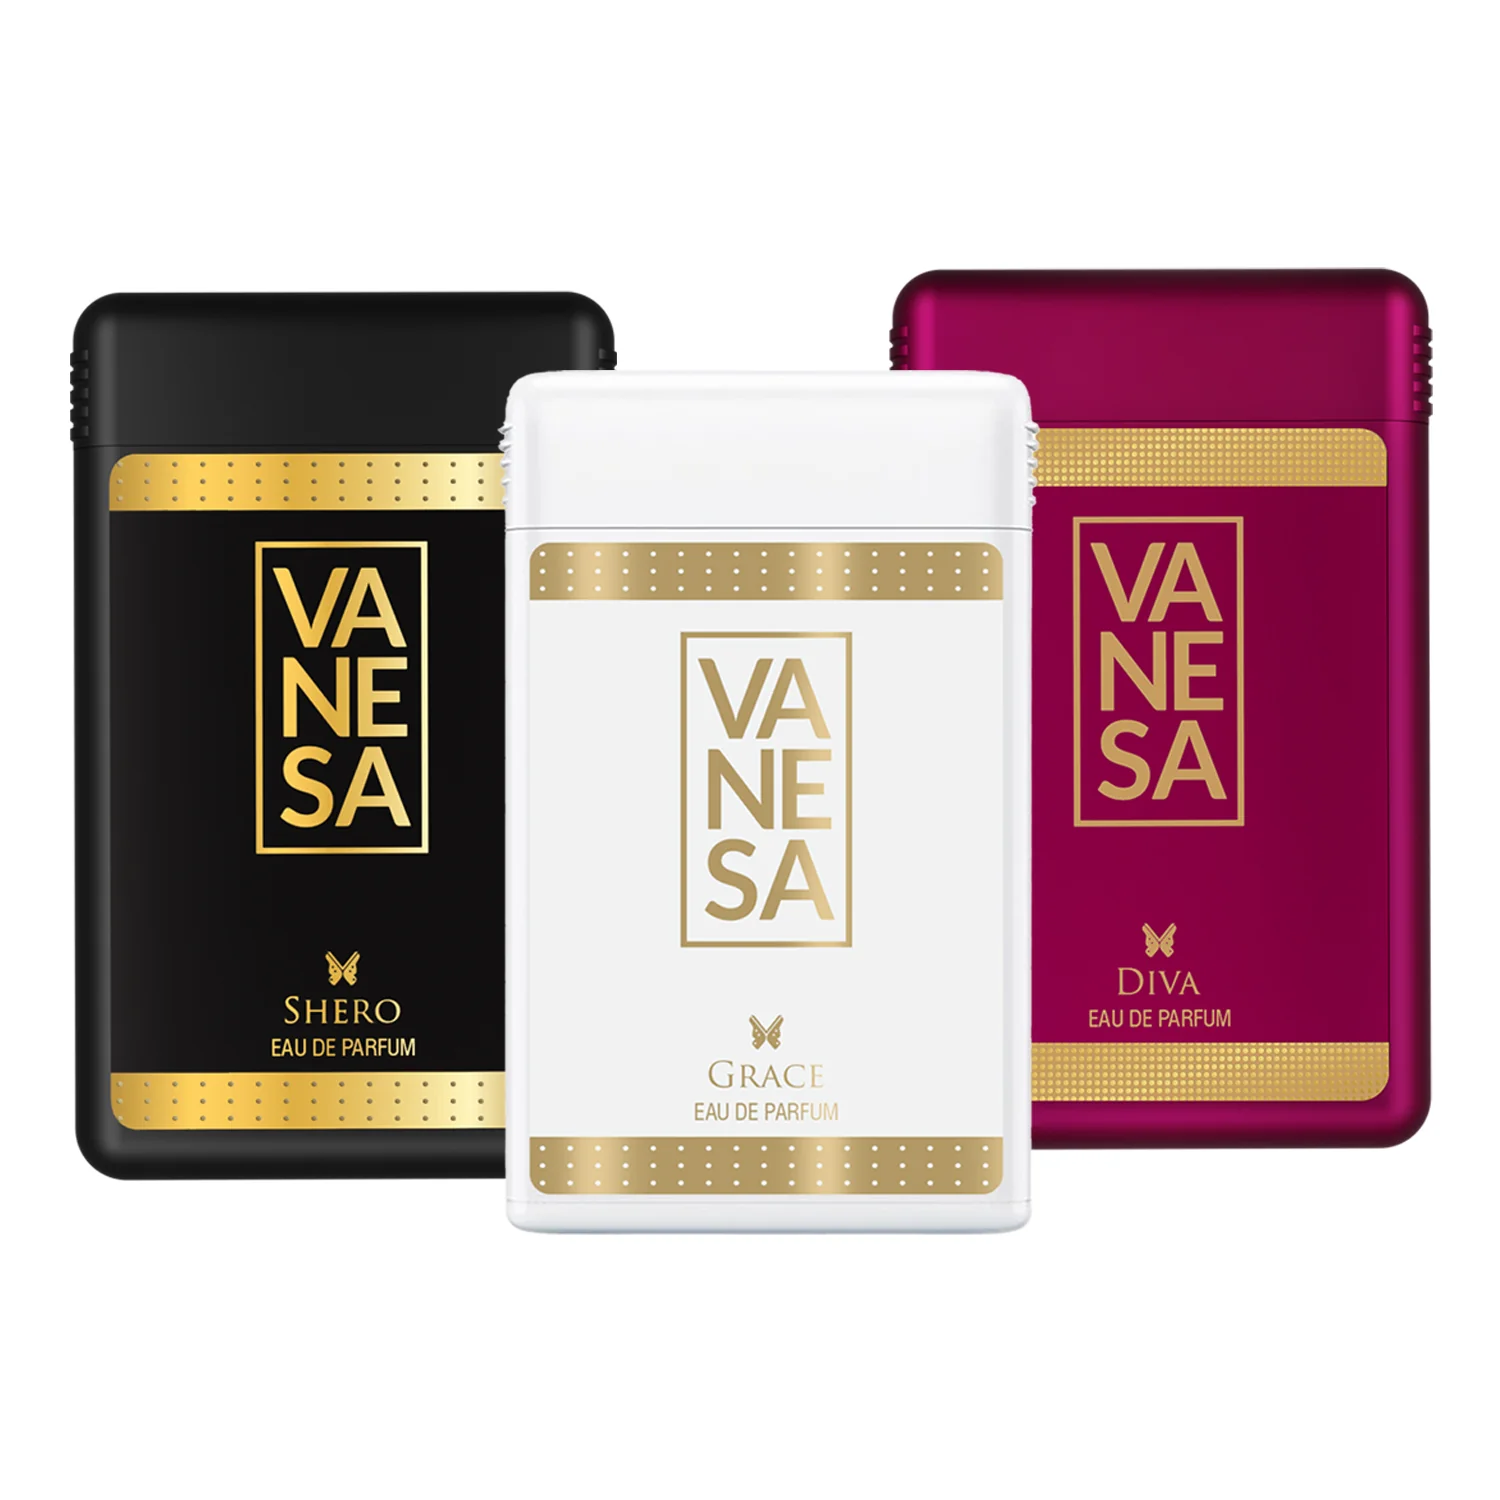 Vanesa Shero, Grace , Diva  Long Lasting Fragrance Perfume | Skin Friendly  For Women